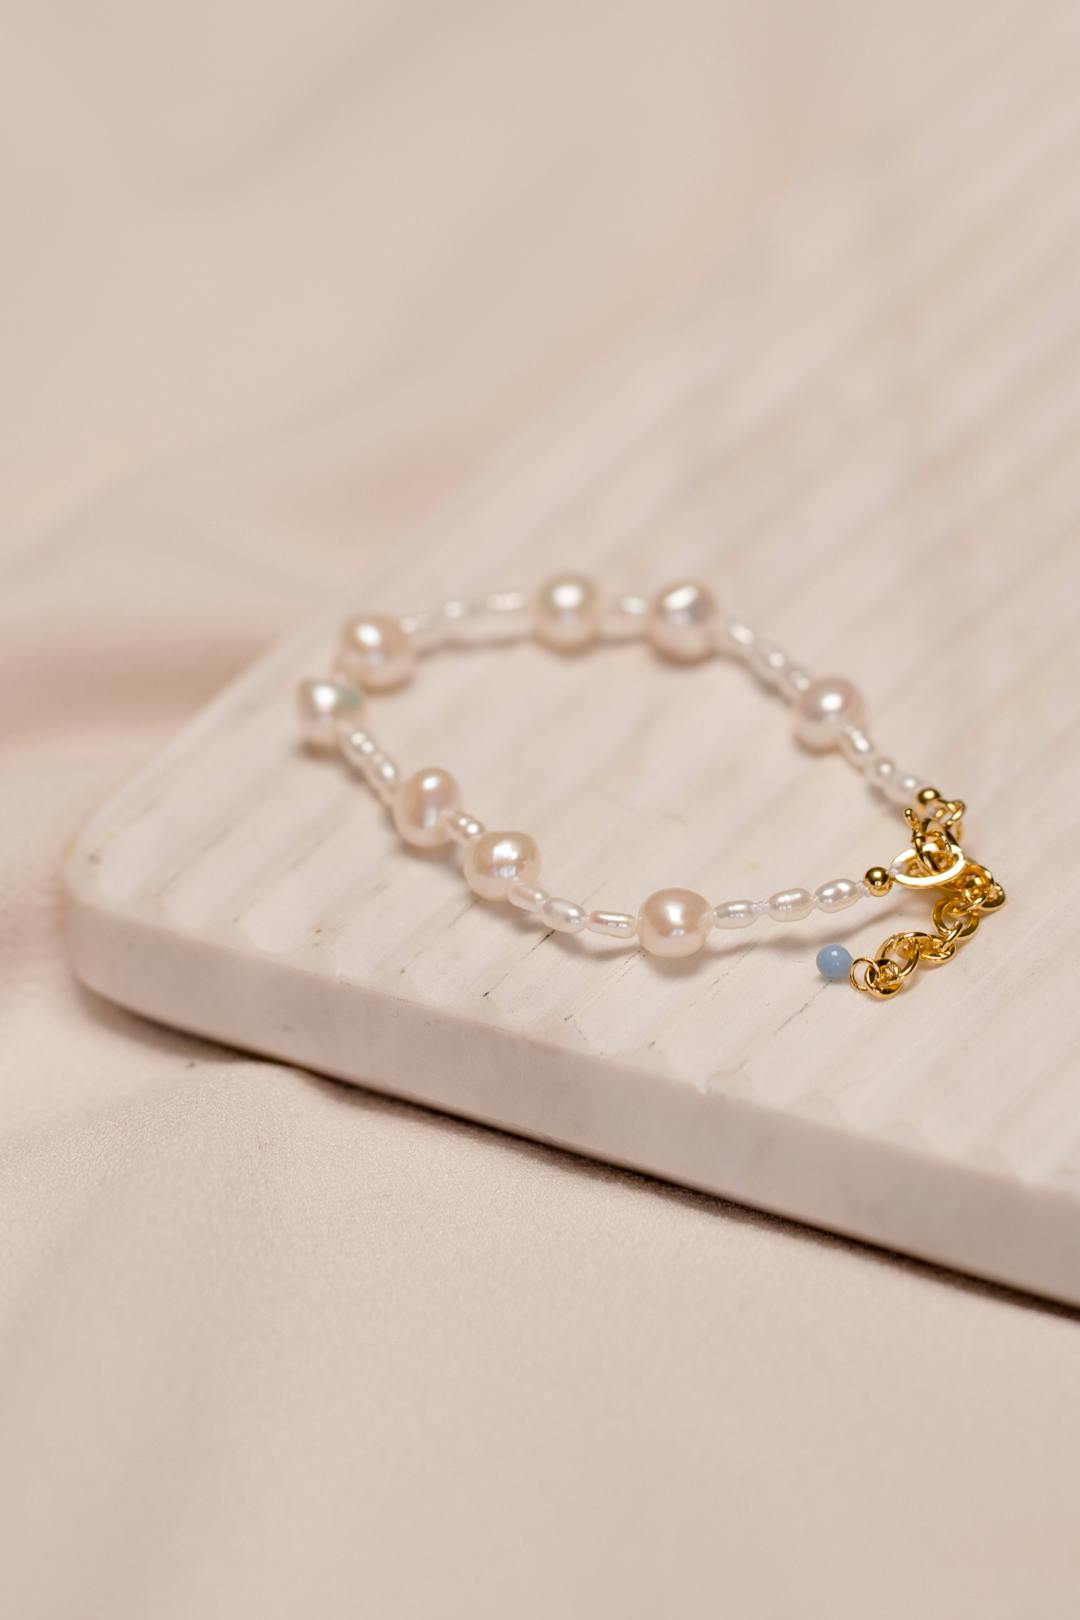 Pearlie bracelet